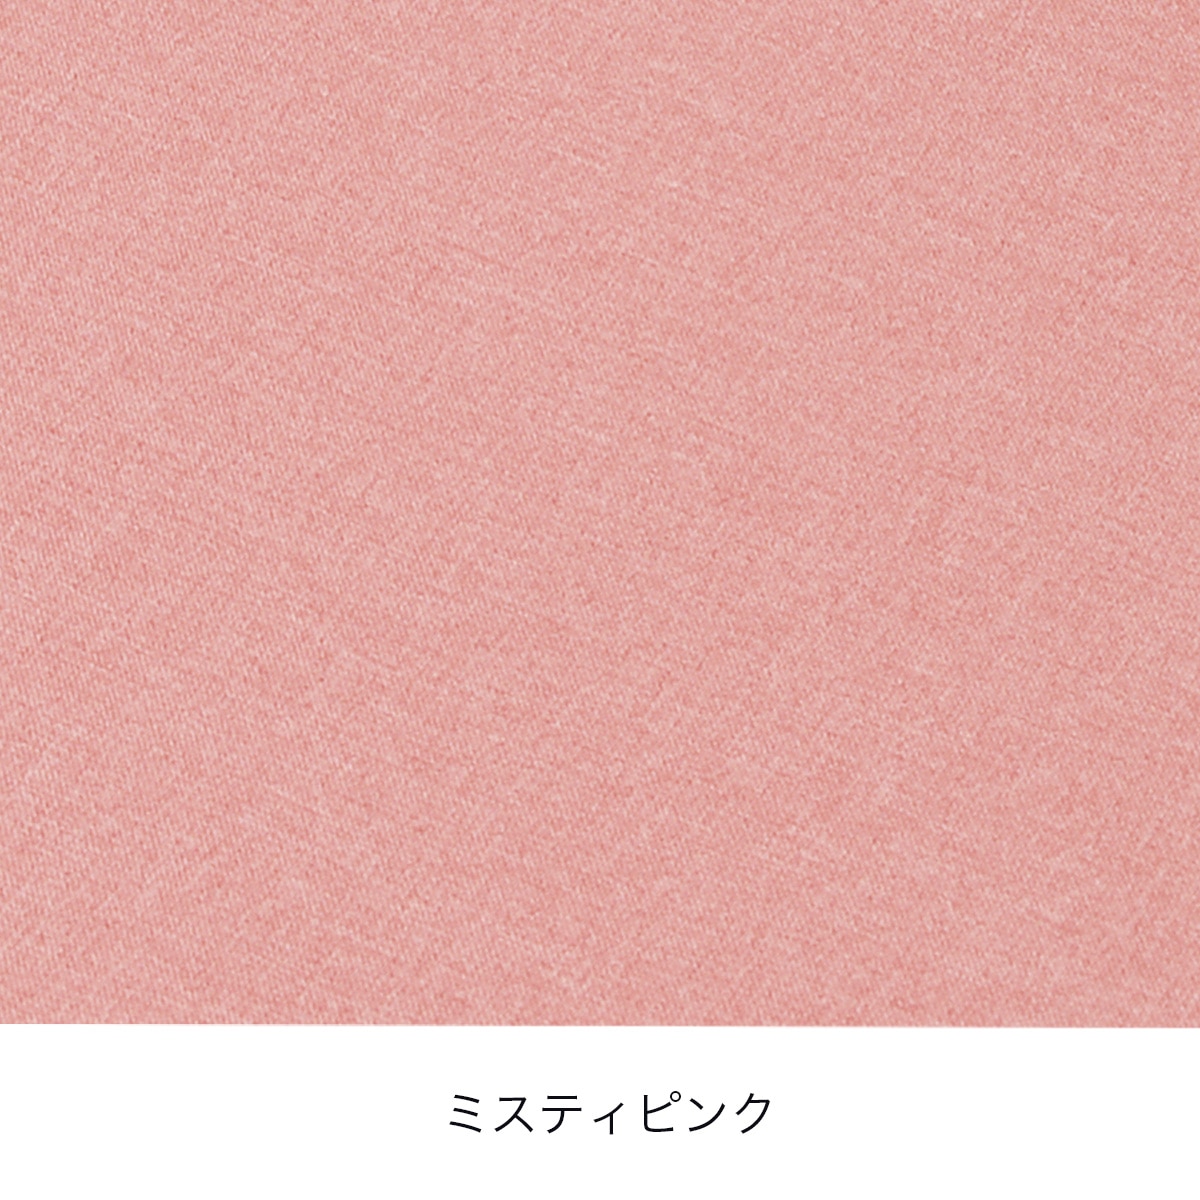 まるプニフィット専用カバー(春夏用)